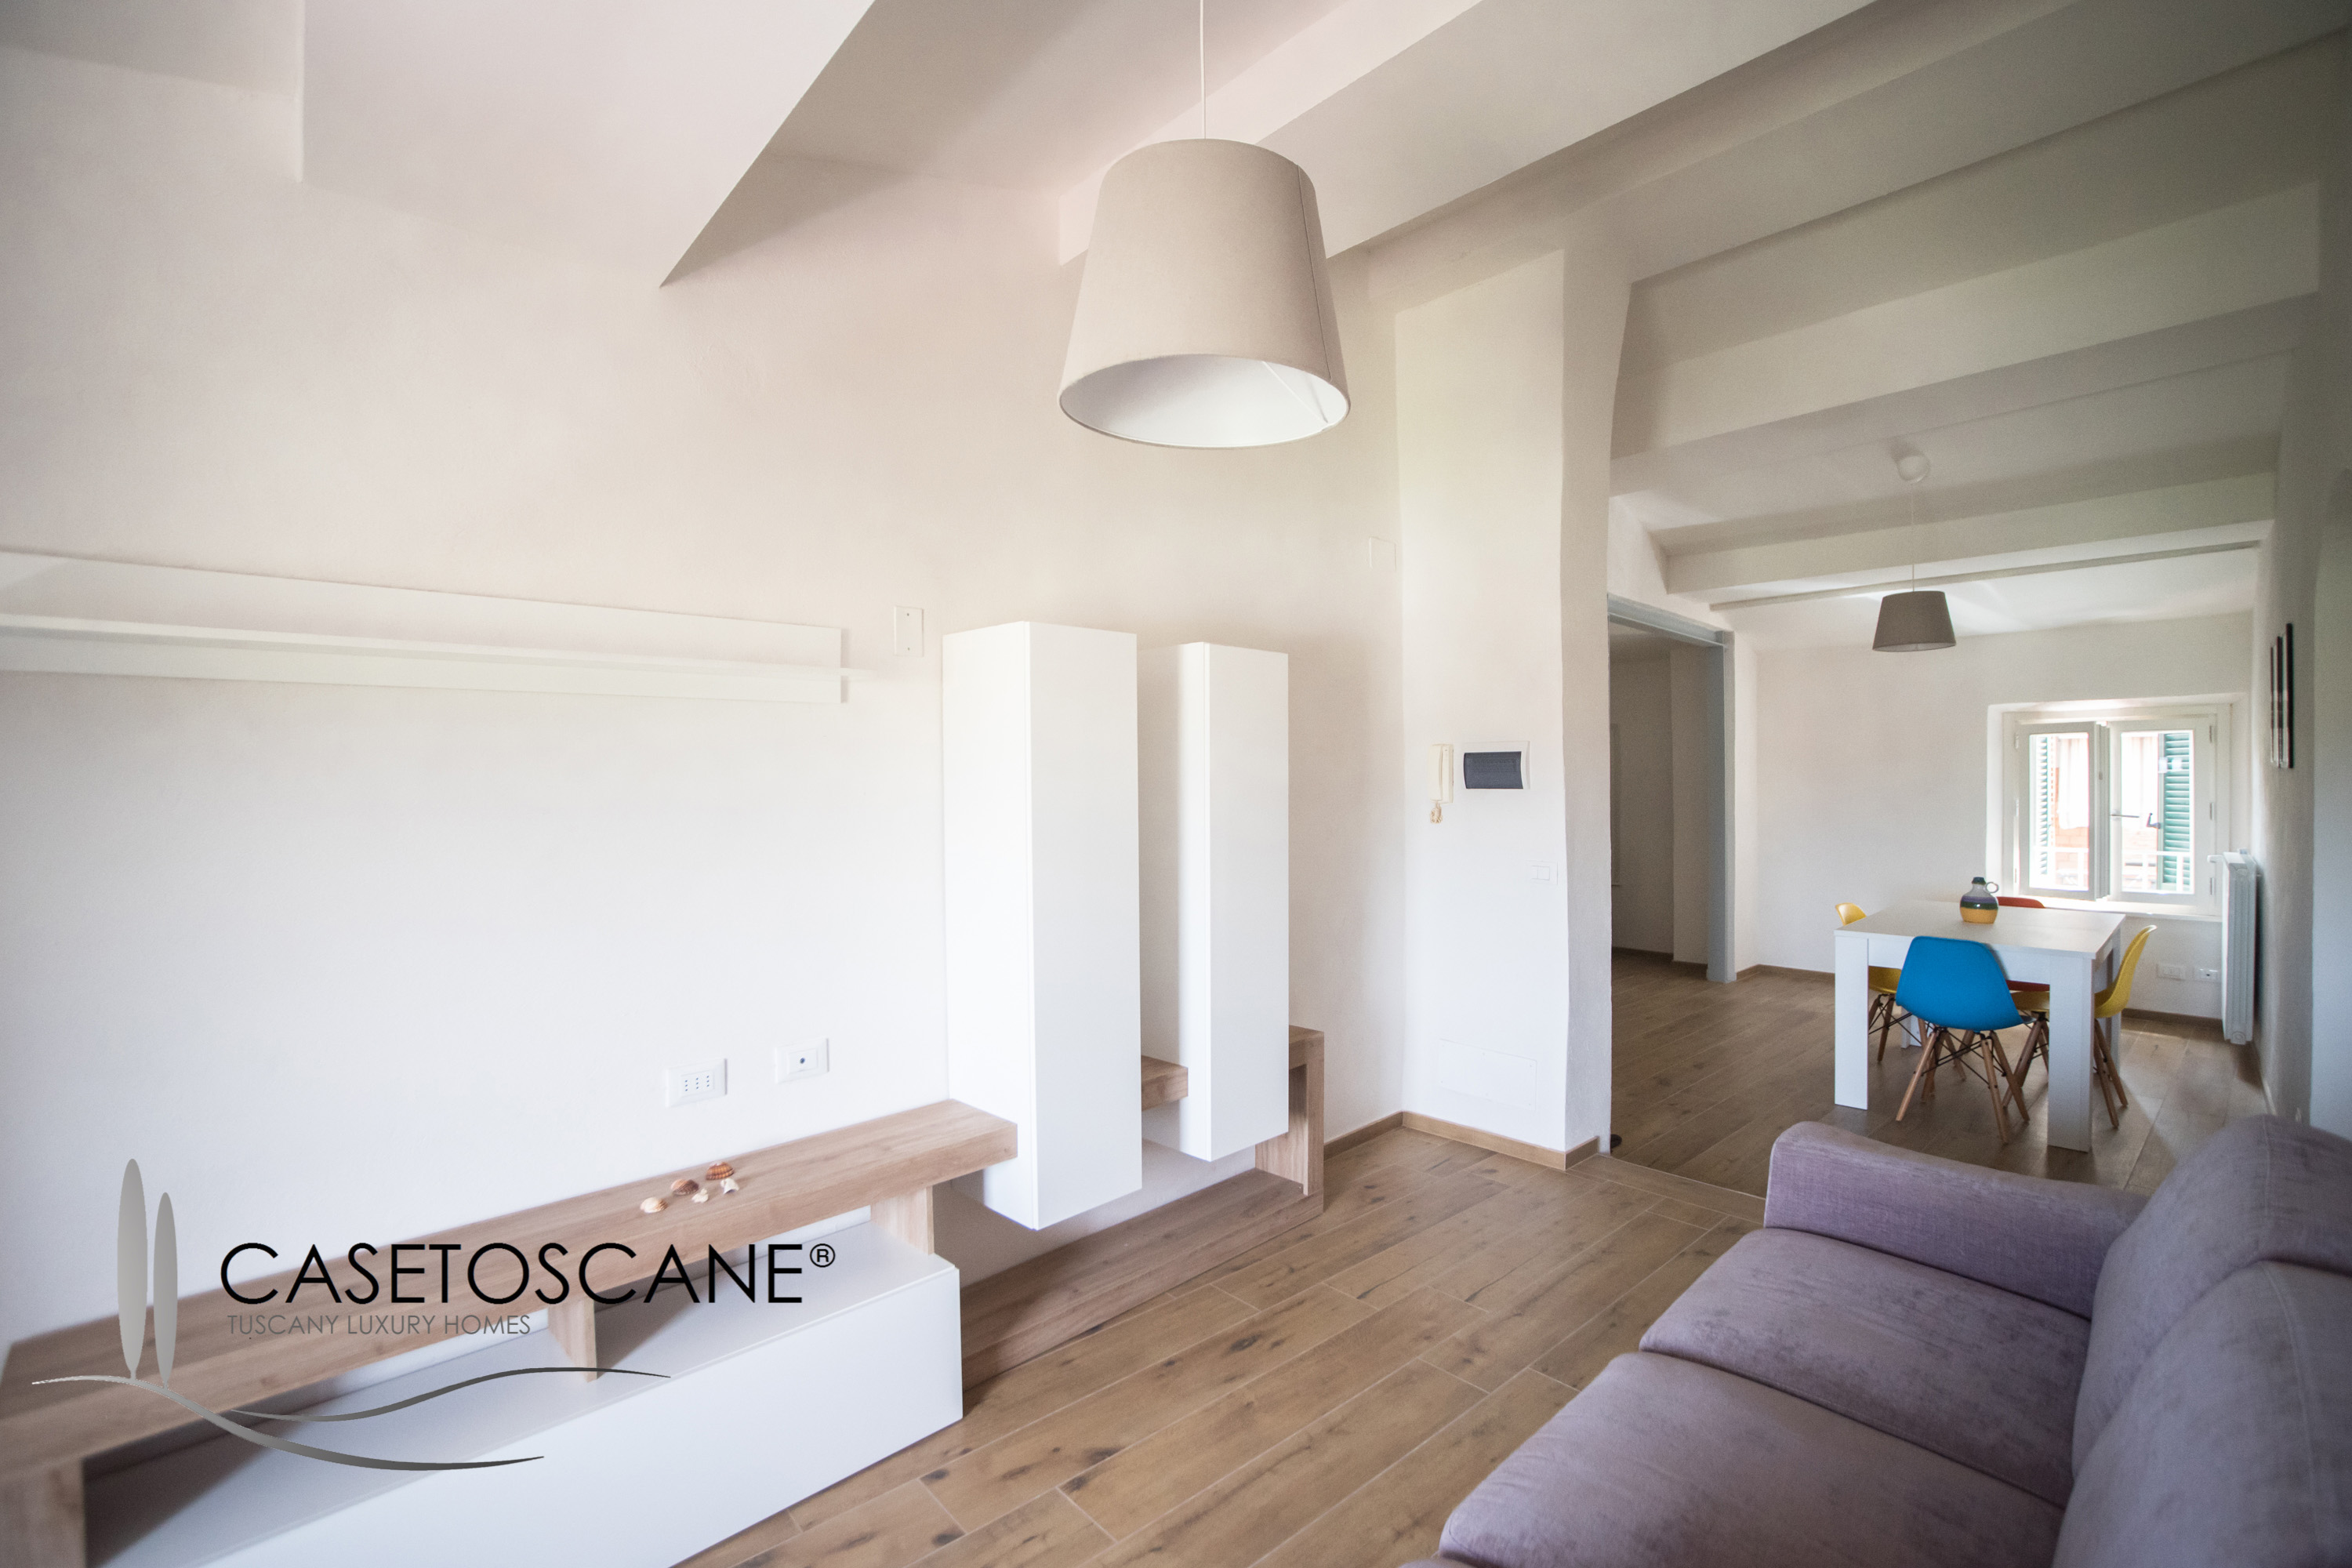 3158 - Grazioso appartamento di mq.60, ultimo piano (2), ristrutturato e mai abitato, con arredamento nuovo a Foiano della Chiana (AR).